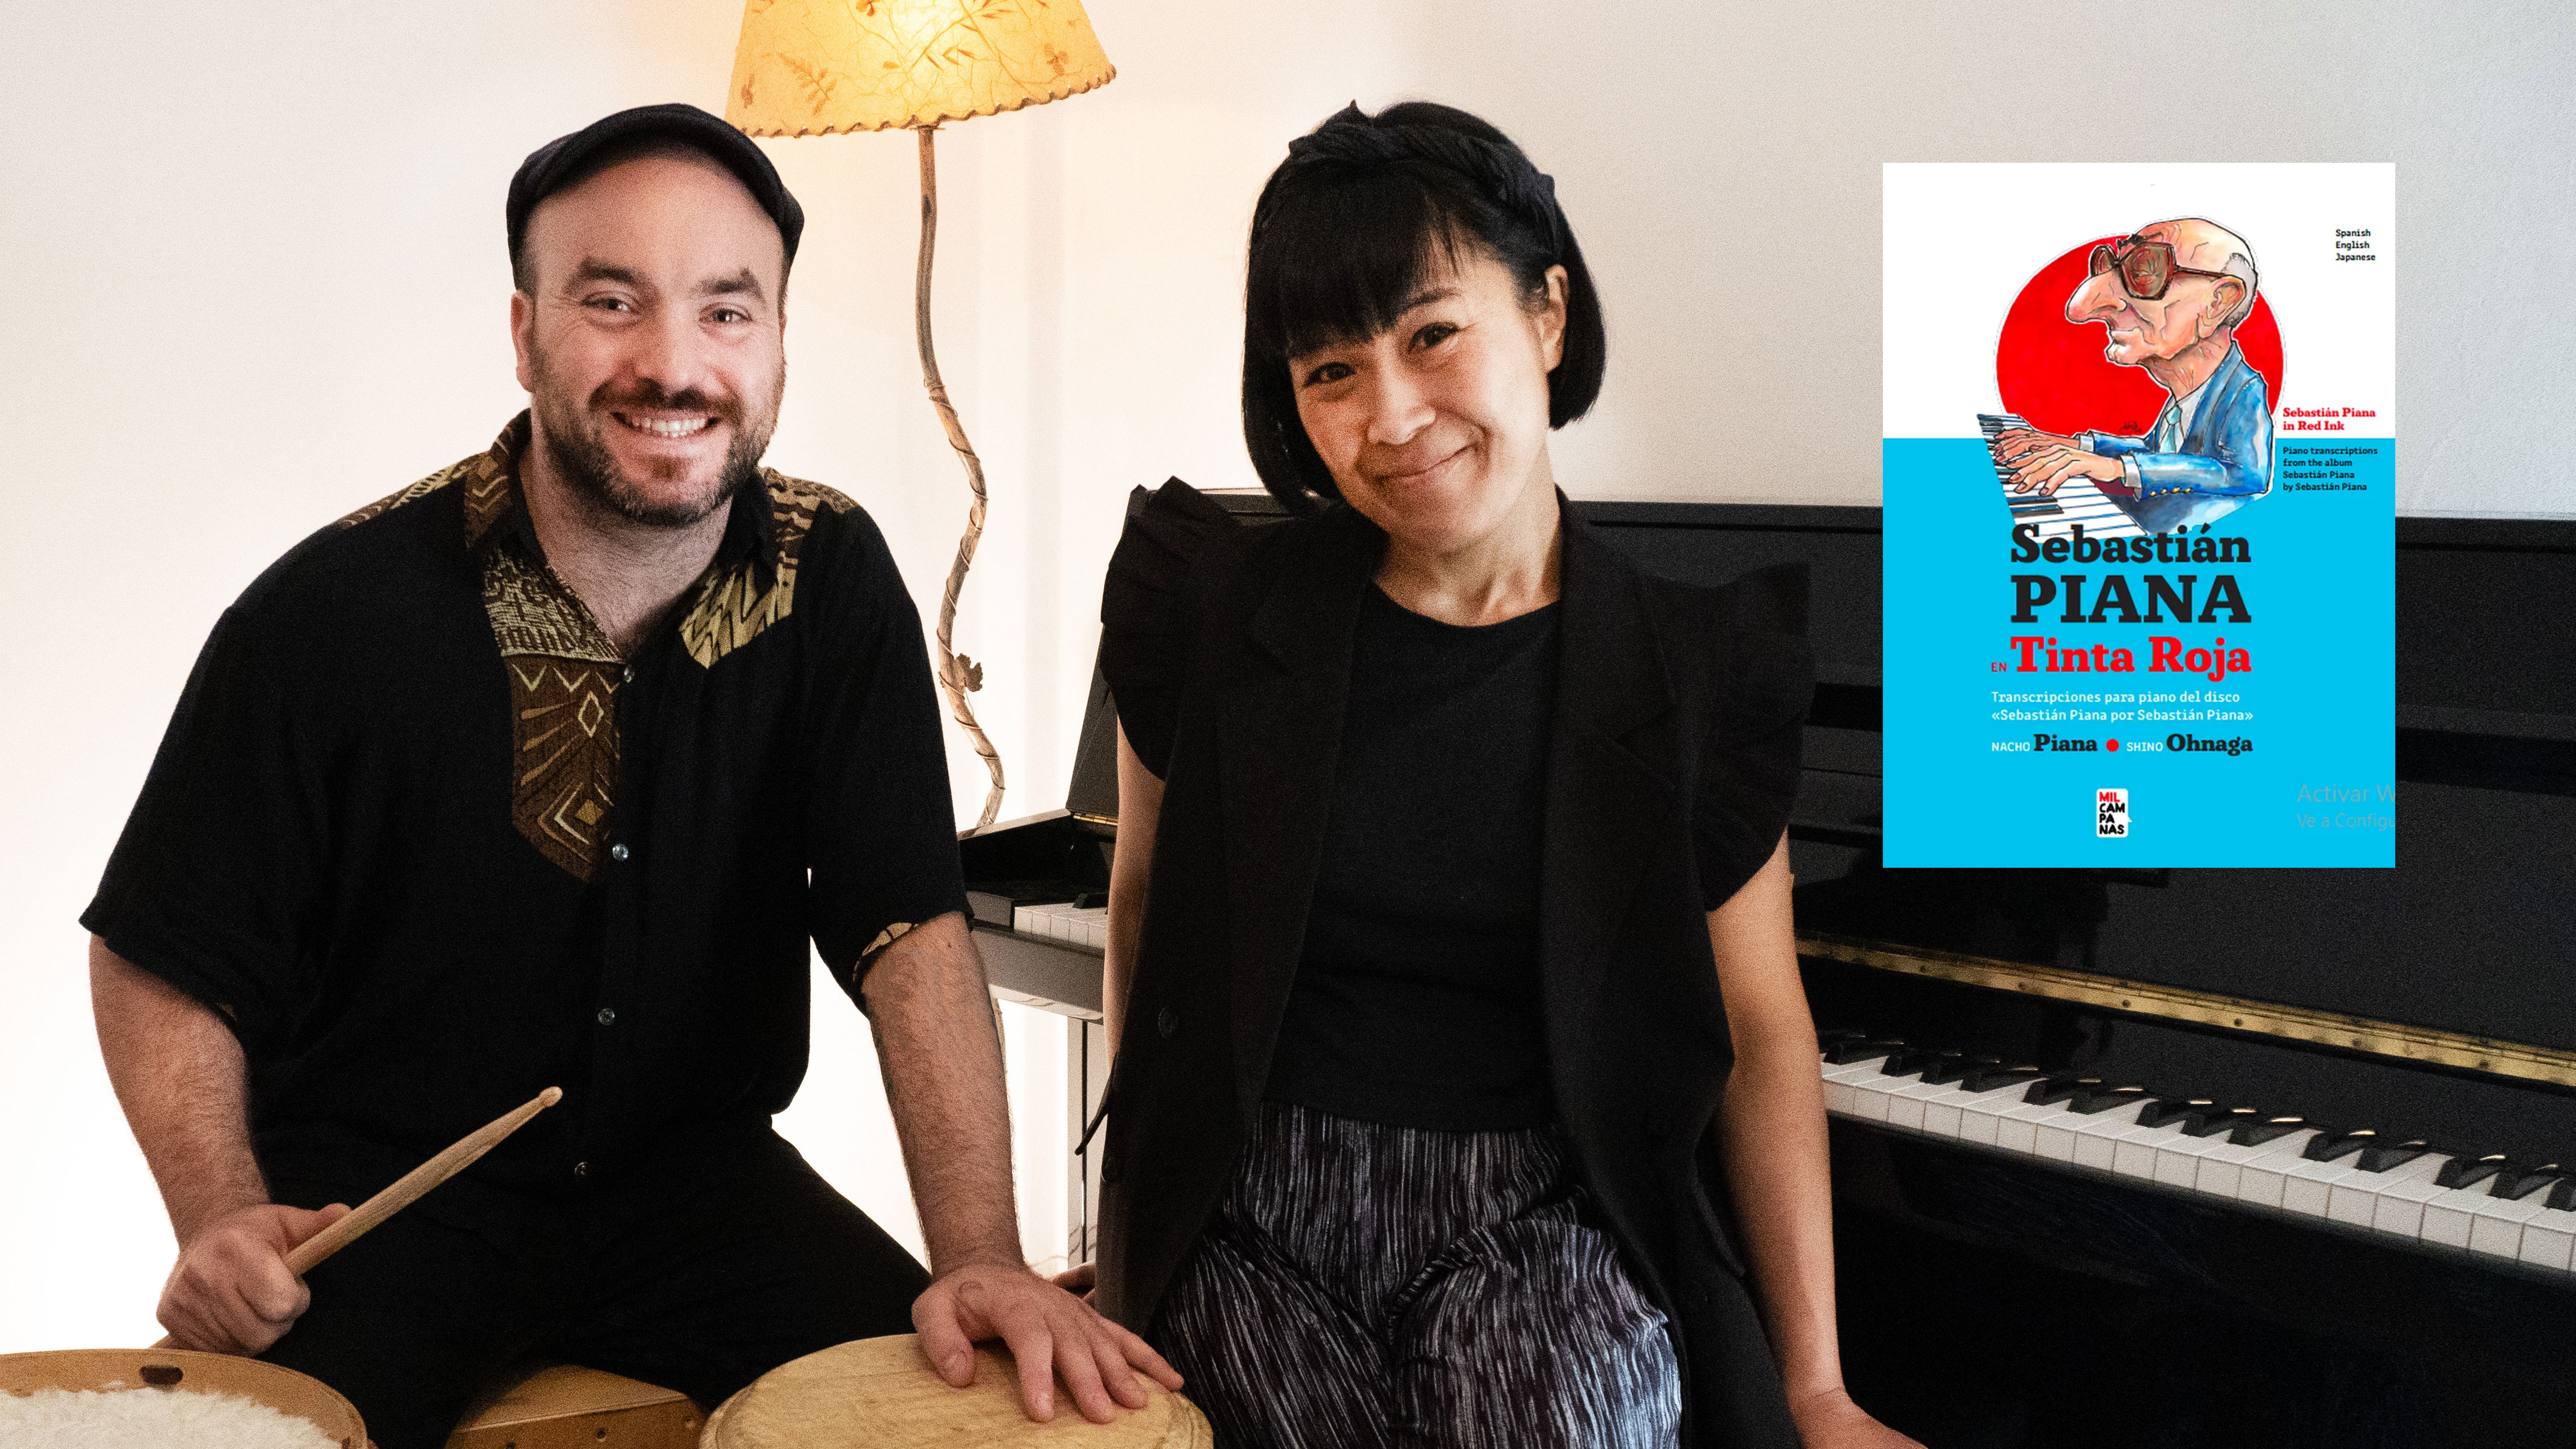 Nacho Piana y Shino Ohnaga editaron "Sebastián Piana en Tinta Roja", donde recuperan 12 obras en las que sobresale la influencia “negra” en el tango (Télam)